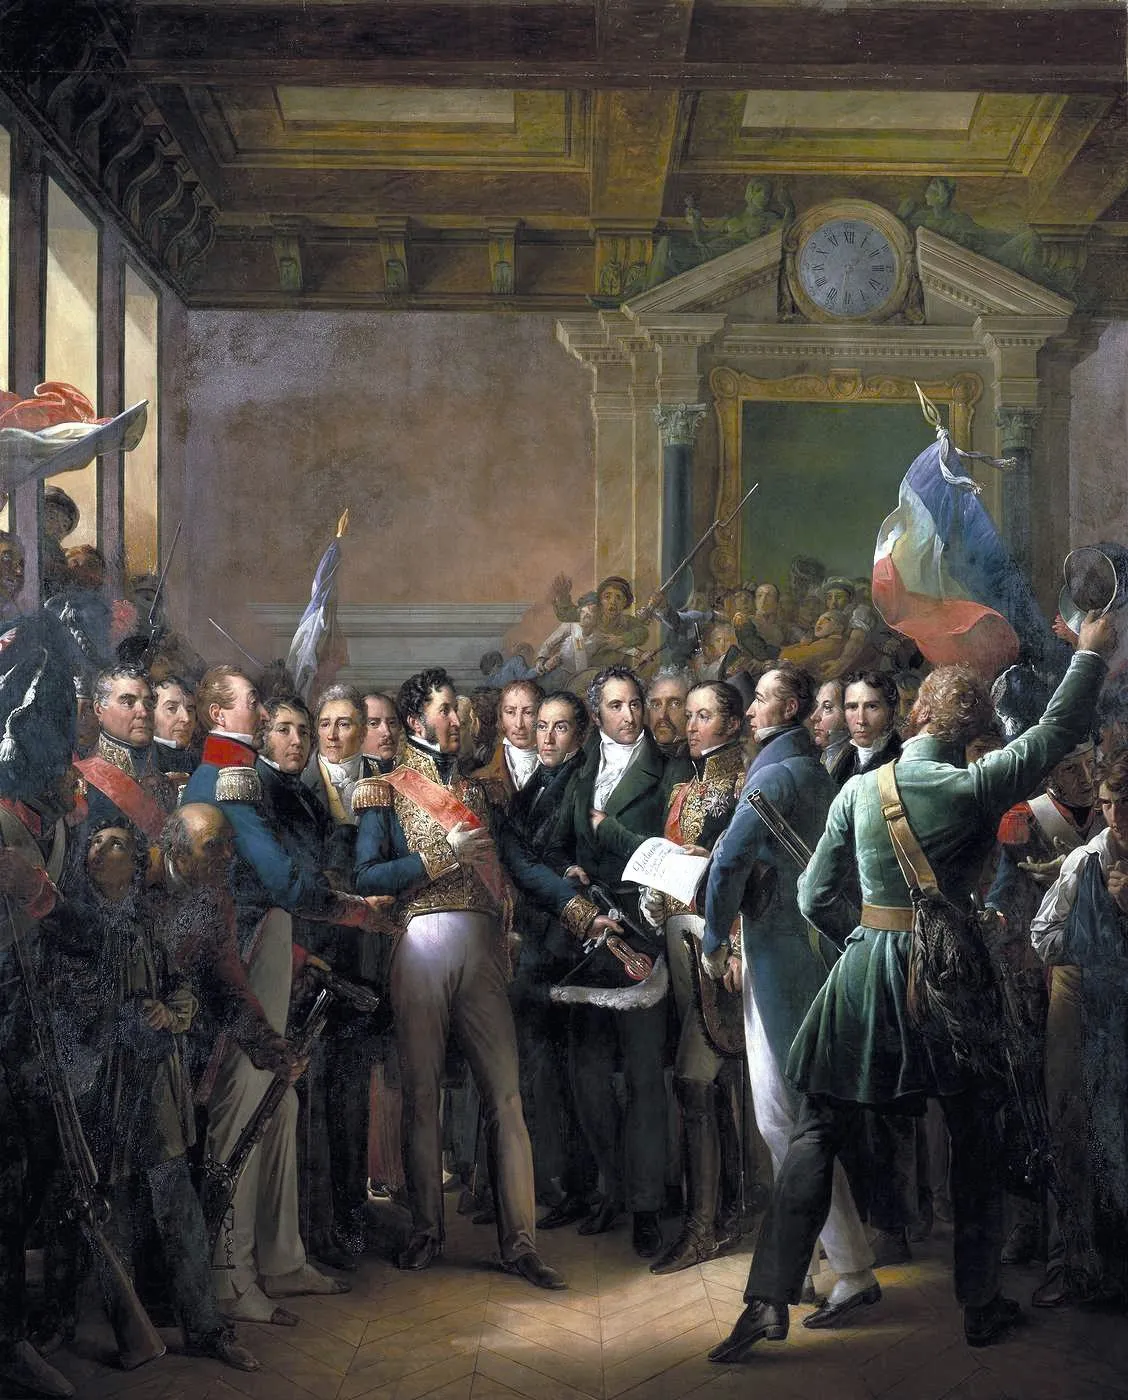 François Gérard, Lecture de la déclaration des députés proclamant le duc, 1836,
huile sur toile (détail), 550 x 442 cm, musée du Château de Versailles.